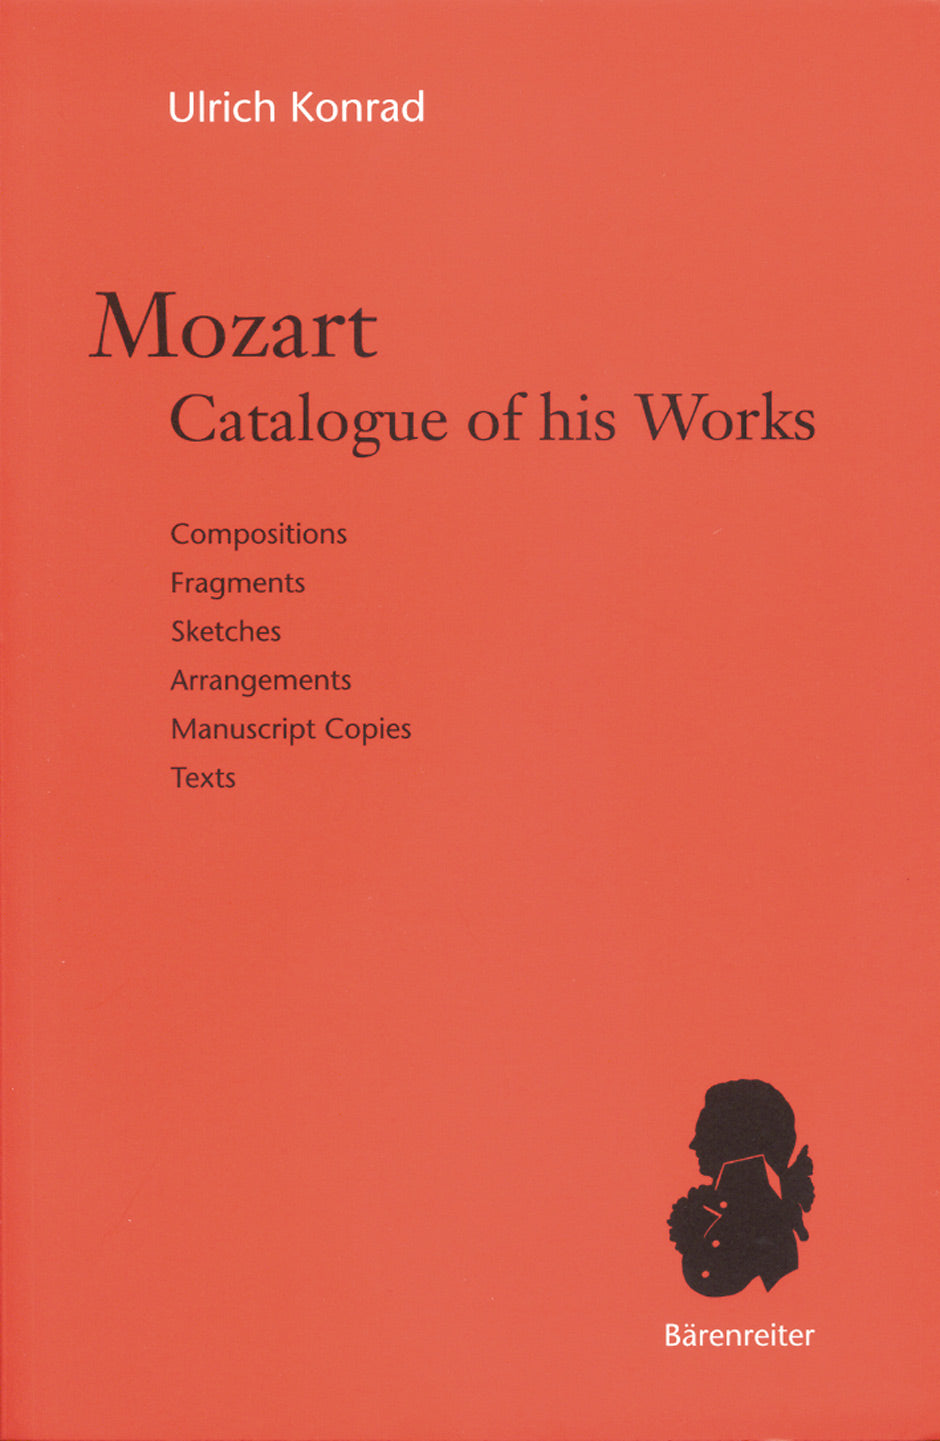 Mozart. Catalogue of his Works -Compositions, Fragments, Sketches, Arrangements, Manuscript Copies, Texts-